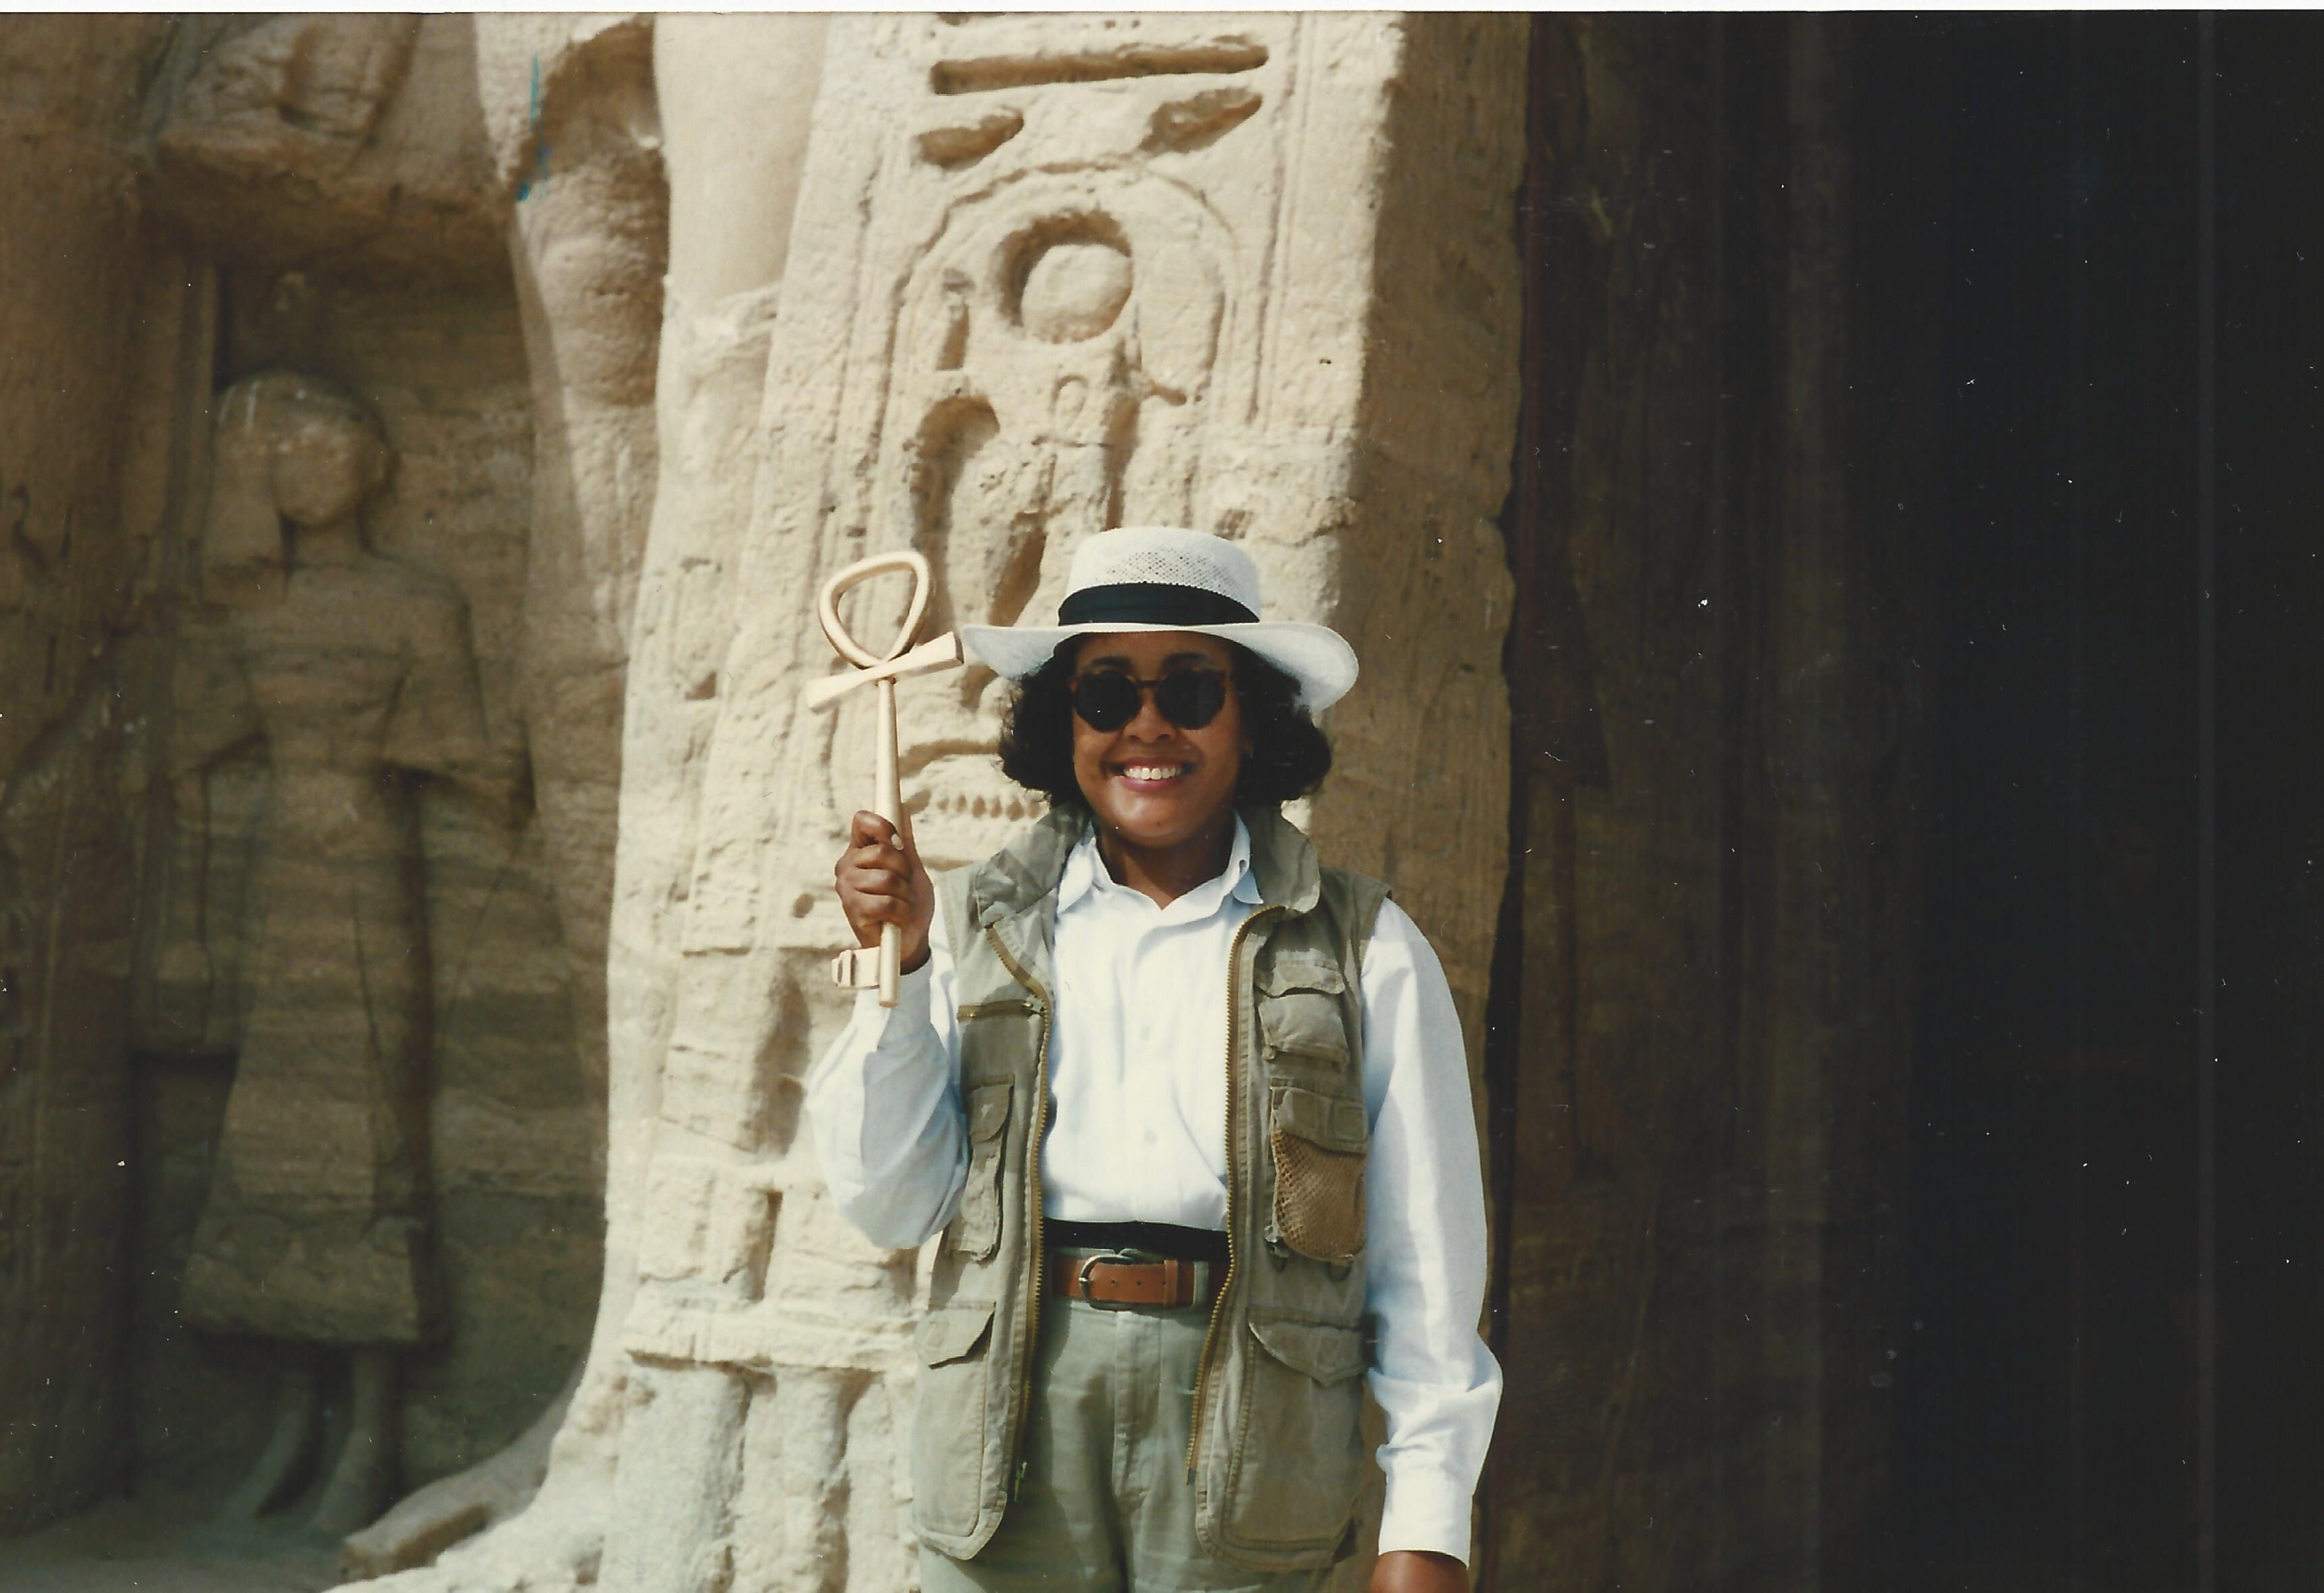 Gail Campbell Woolley en Egipto, 1996. Templo de Abu Simbel. Gail sostiene un anj o símbolo de la "llave de la vida".